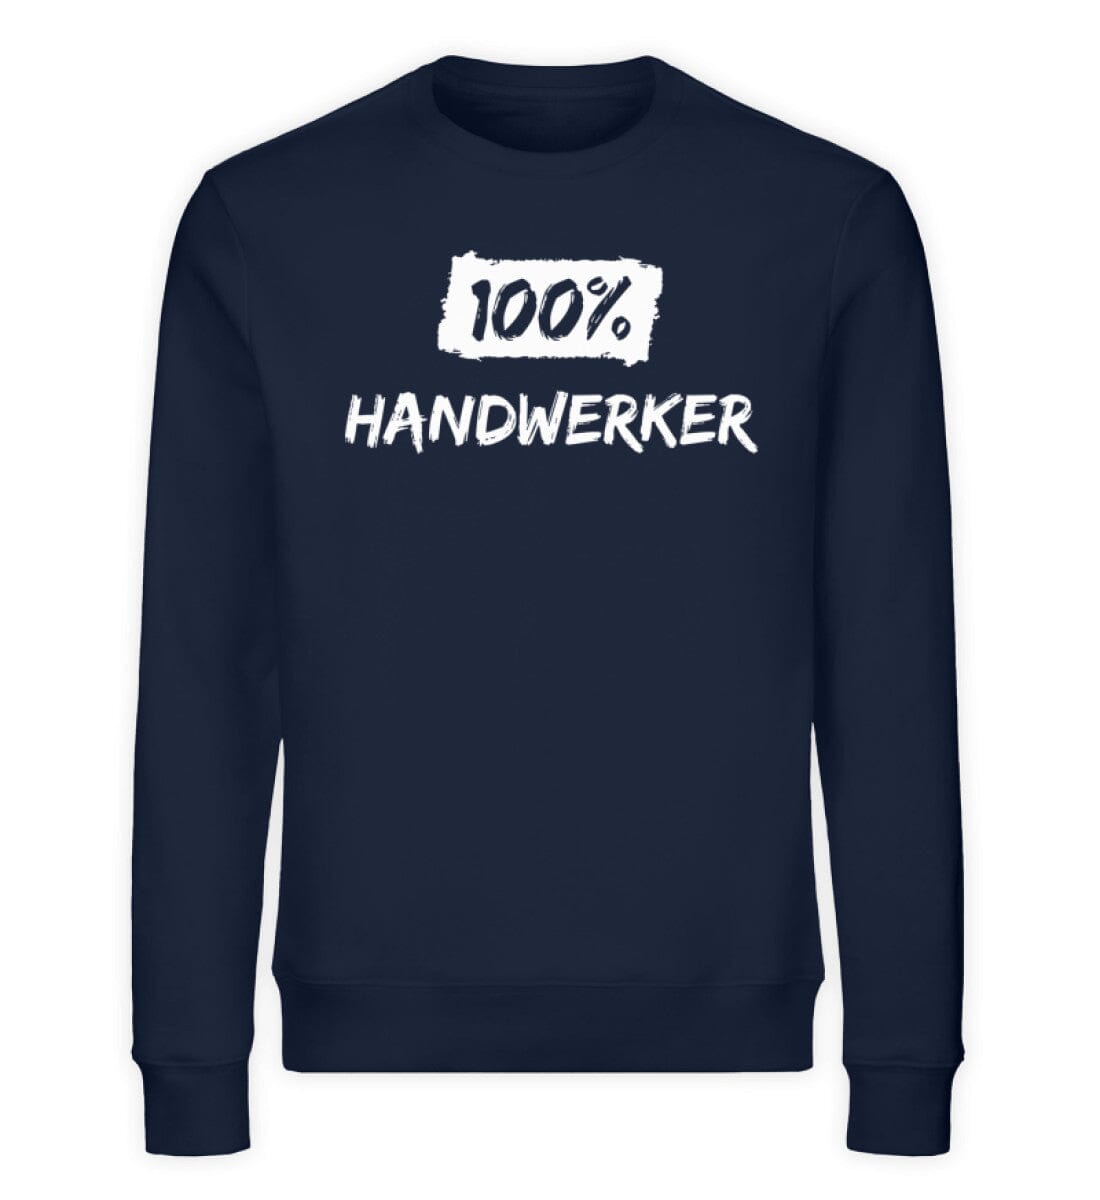 100% Handwerker - Unisex Bio Sweatshirt French Navy XS 